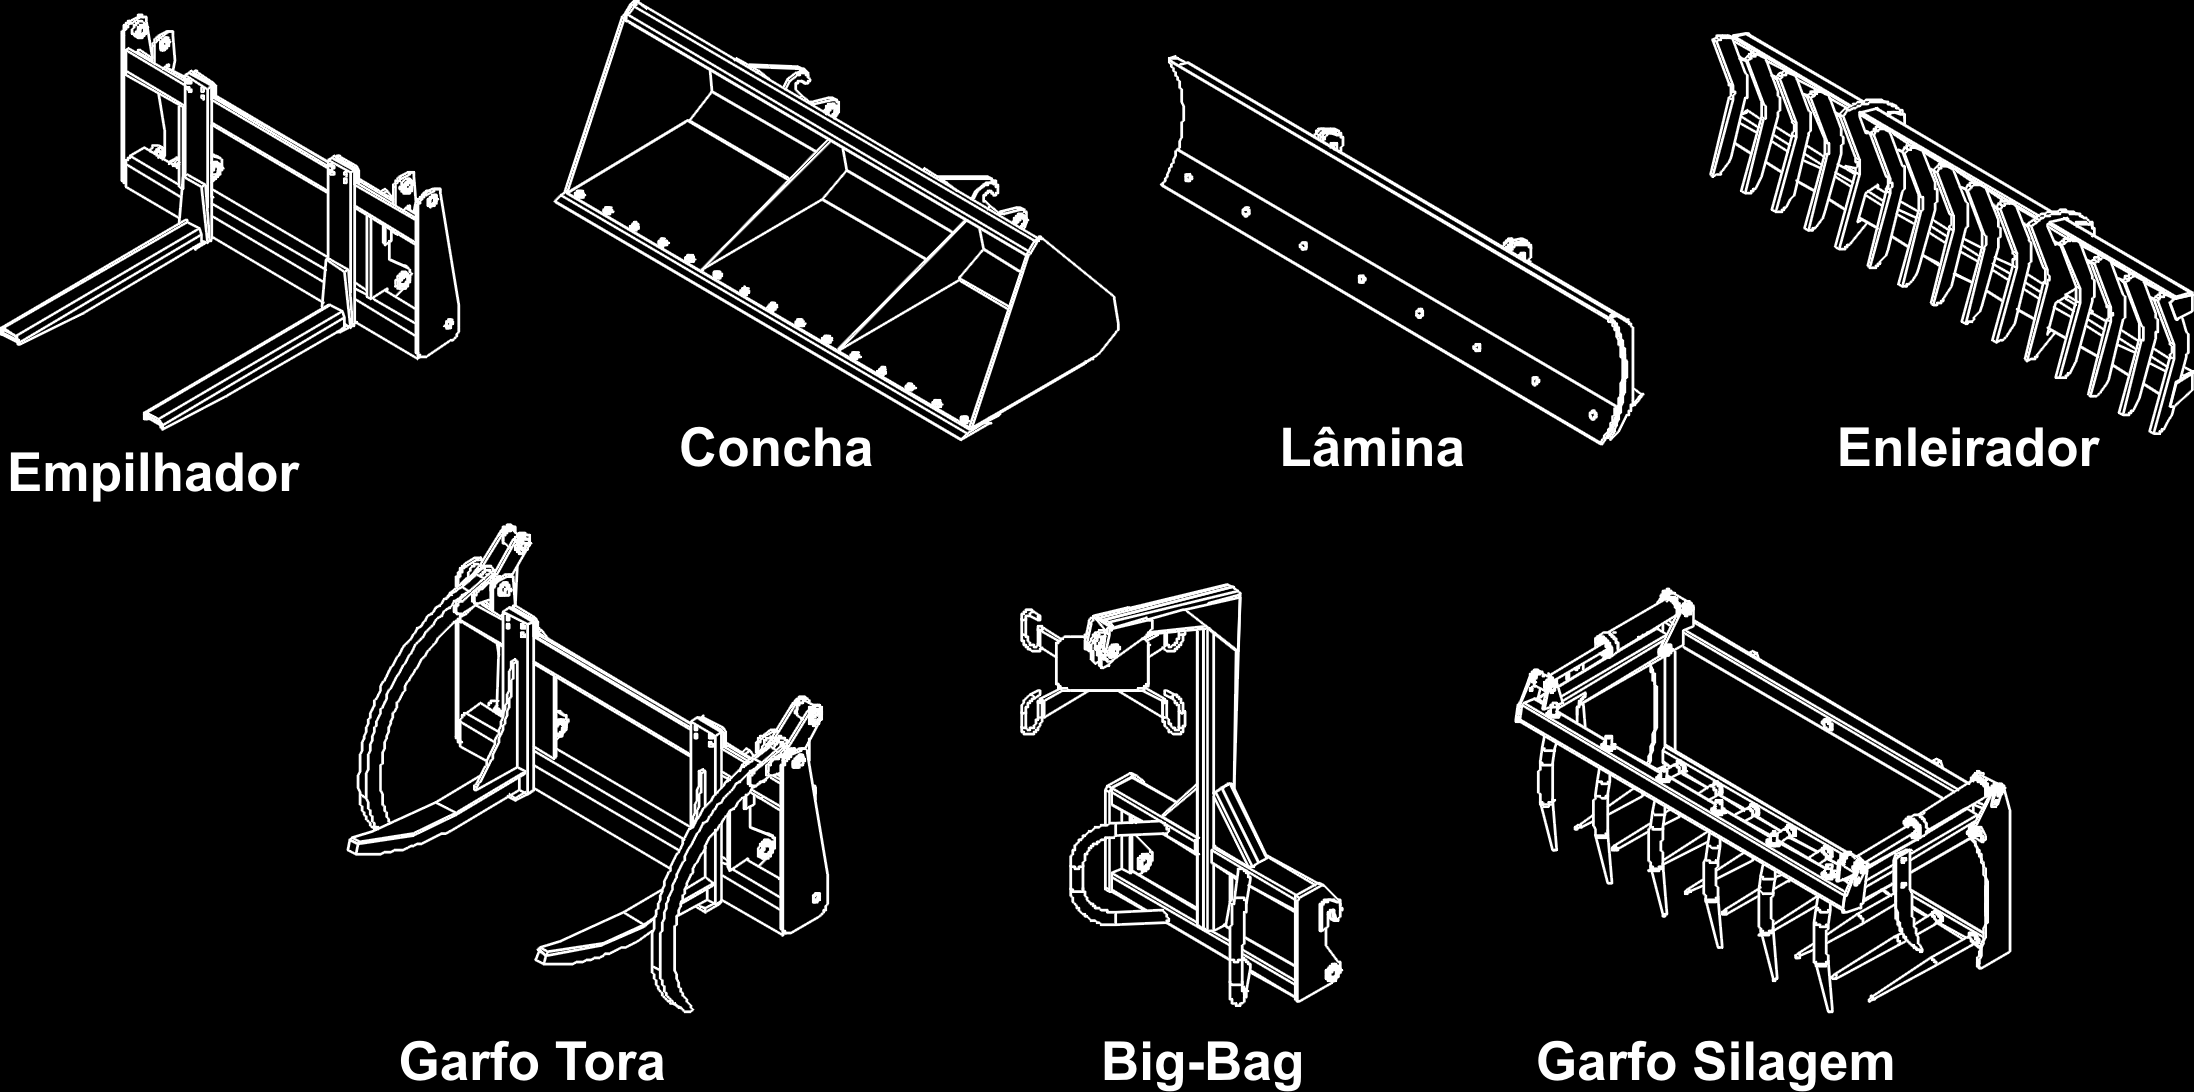 ACESSÓRIOS guincho big-bag Guincho para trabalho com sistema Big-Bag mais robusto e com lubrificação nas articulações, permite trabalhos intensos com elevada vida útil.